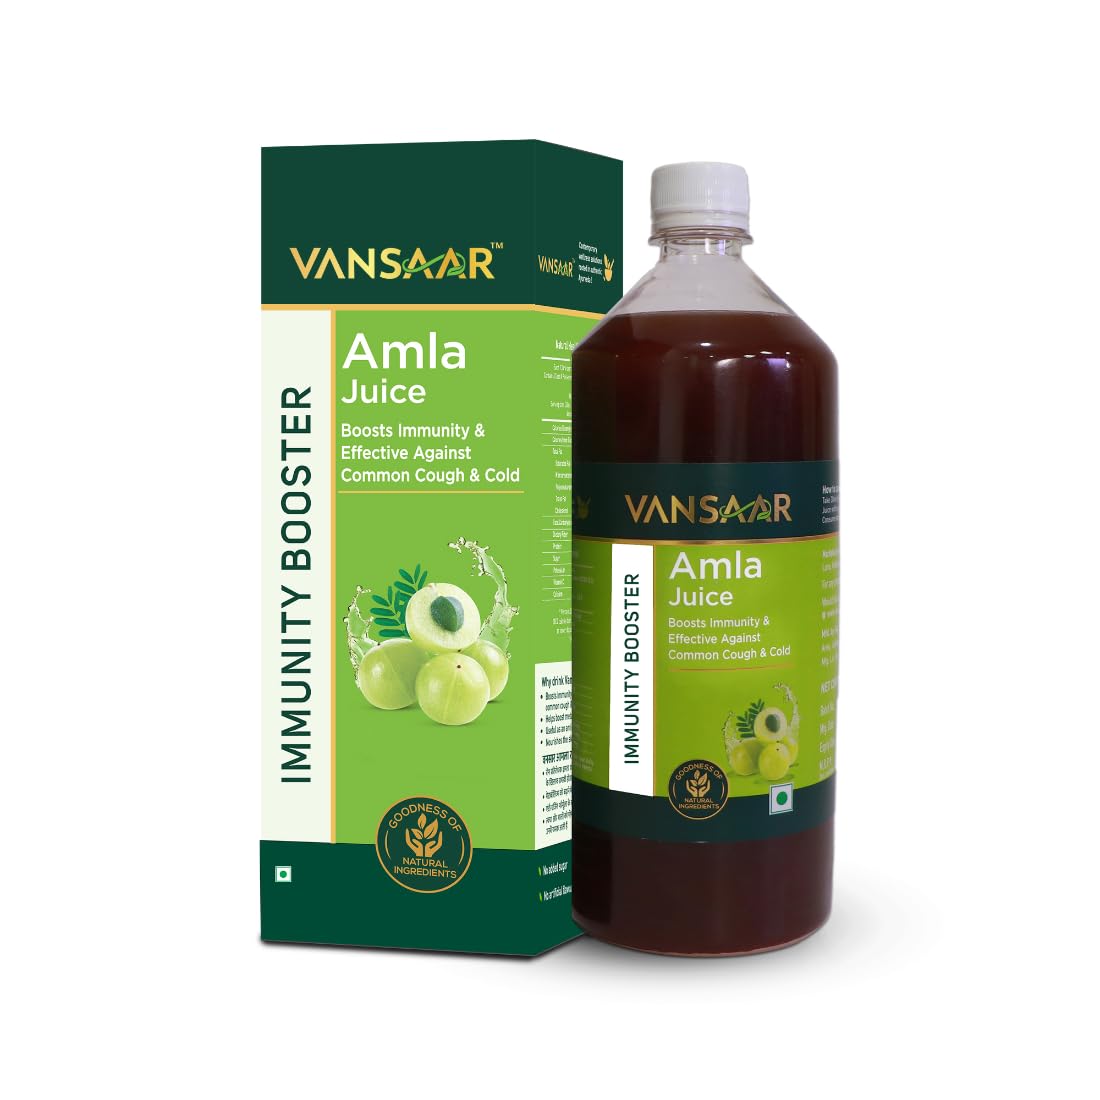 Vansaar Amla Juice - buy in USA, Australia, Canada